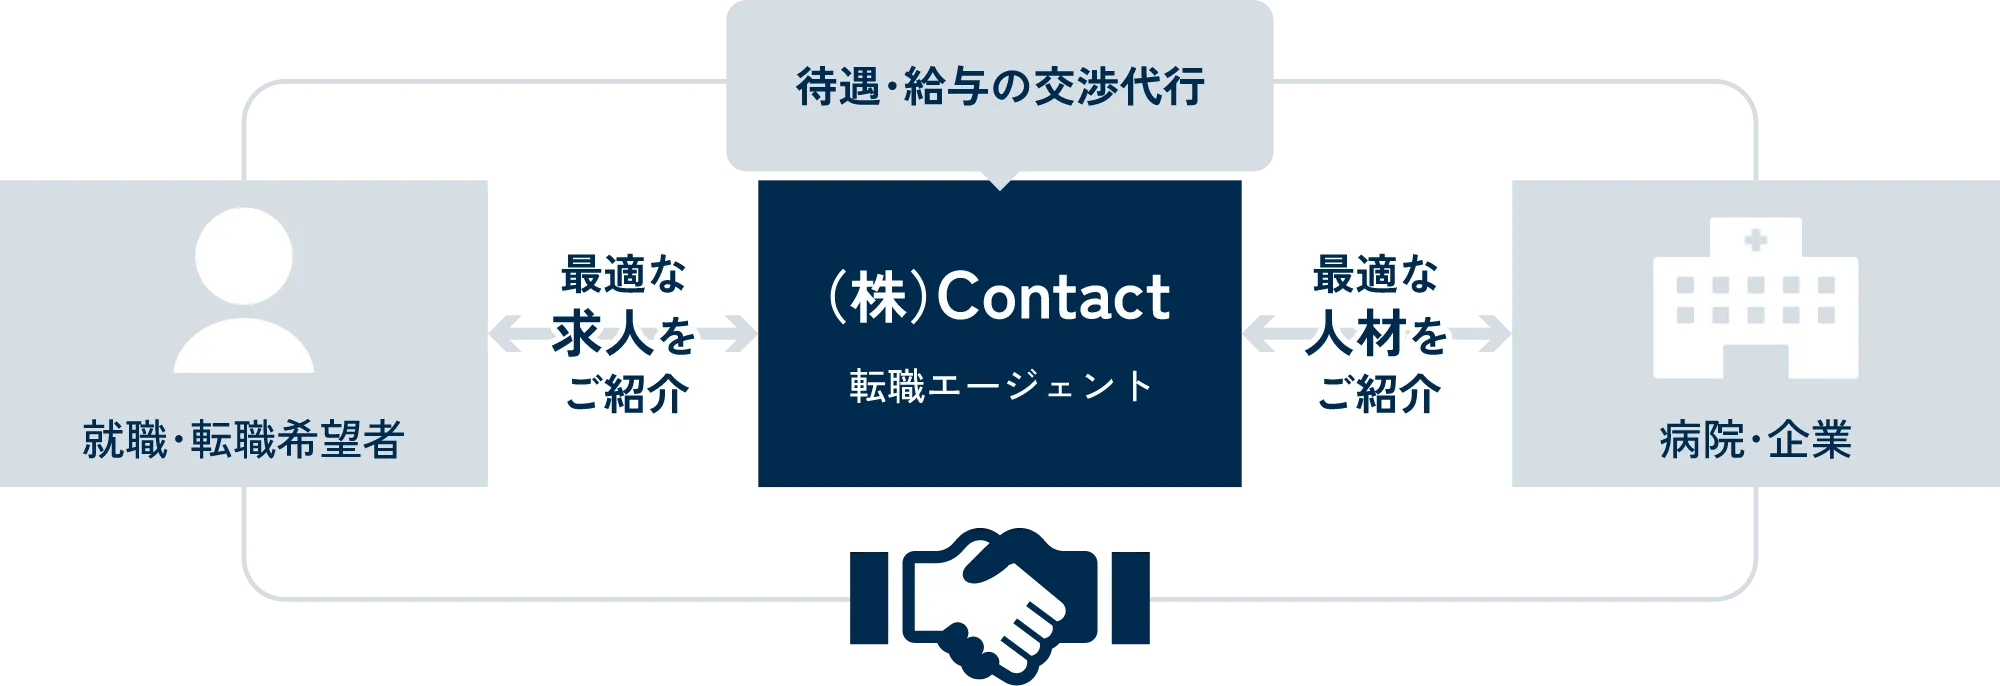 株式会社Contactの事業説明図